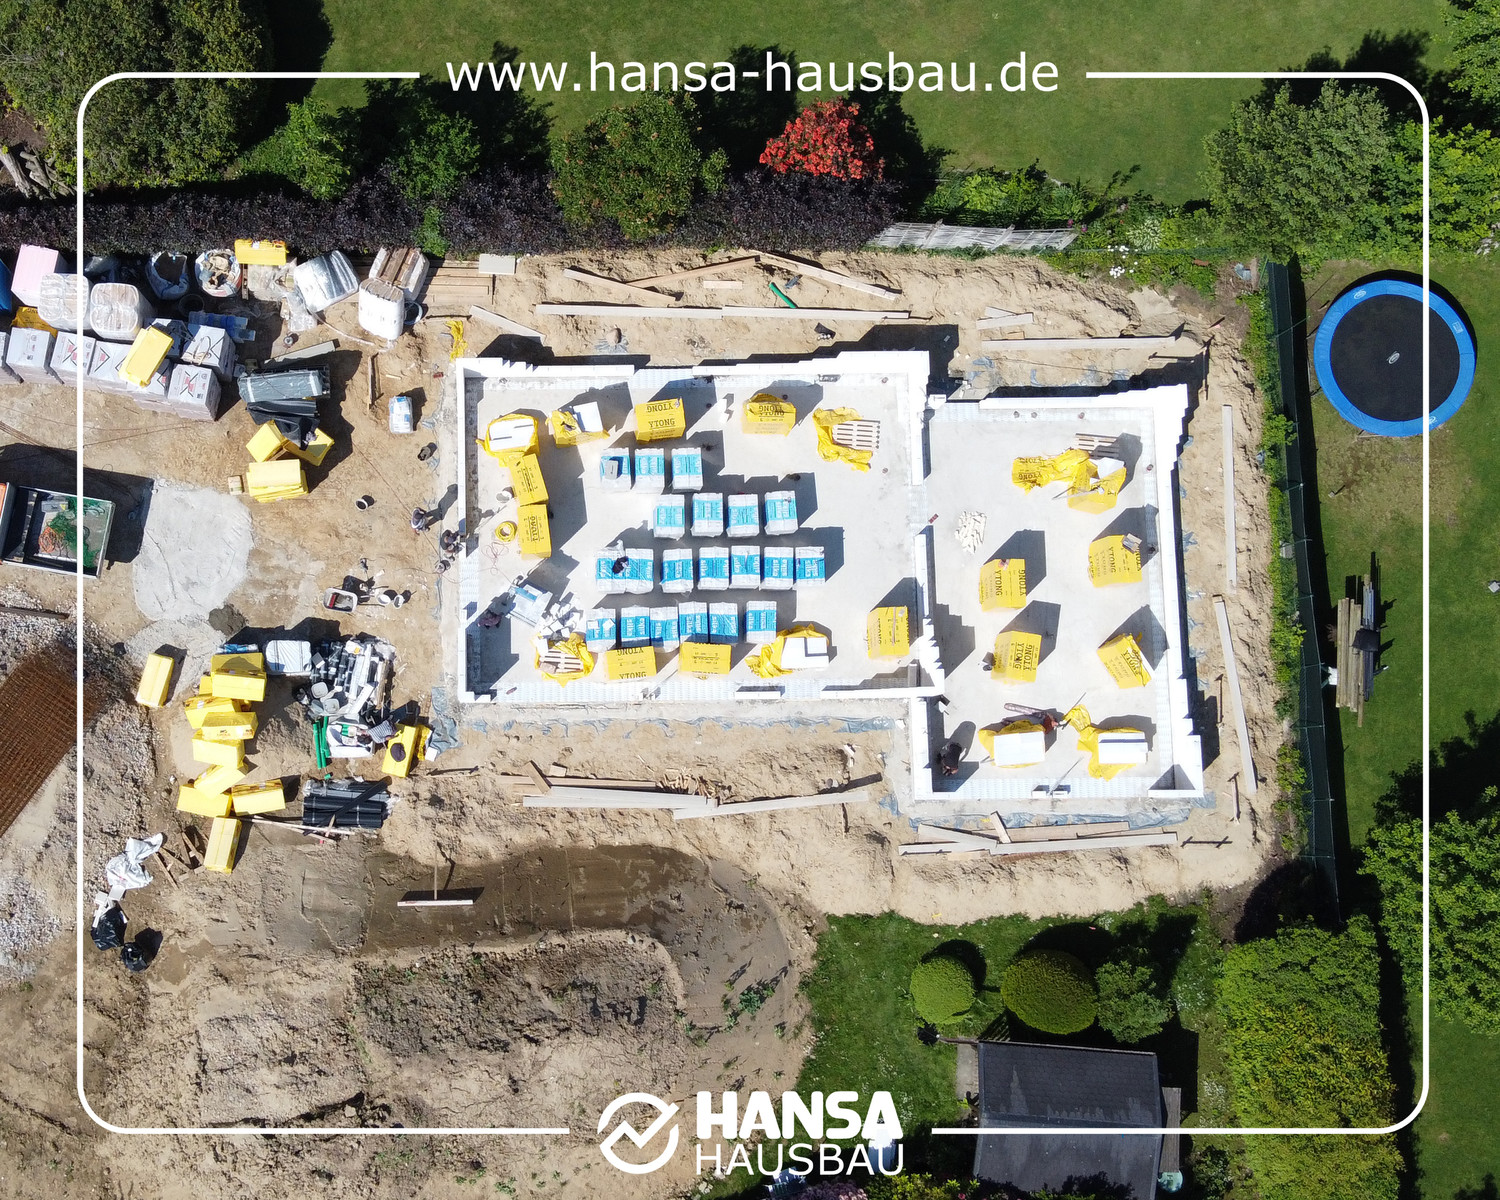 Hansa Hausbau Bauplanung Architektenhaus Neubau Nenndorf